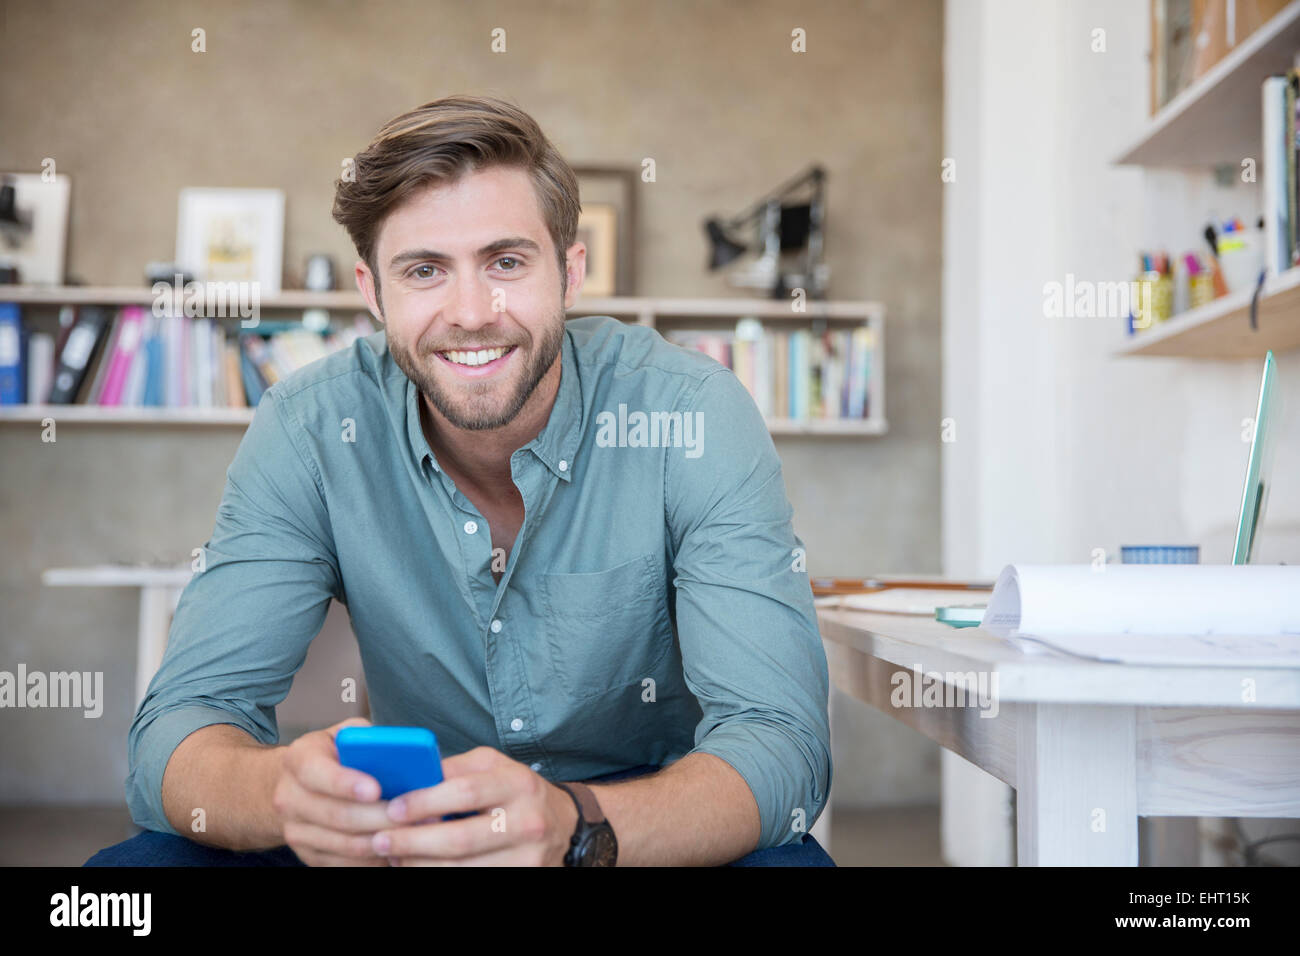 Porträt der junge blonde Mann, sitzend mit Mobiltelefon Stockfoto